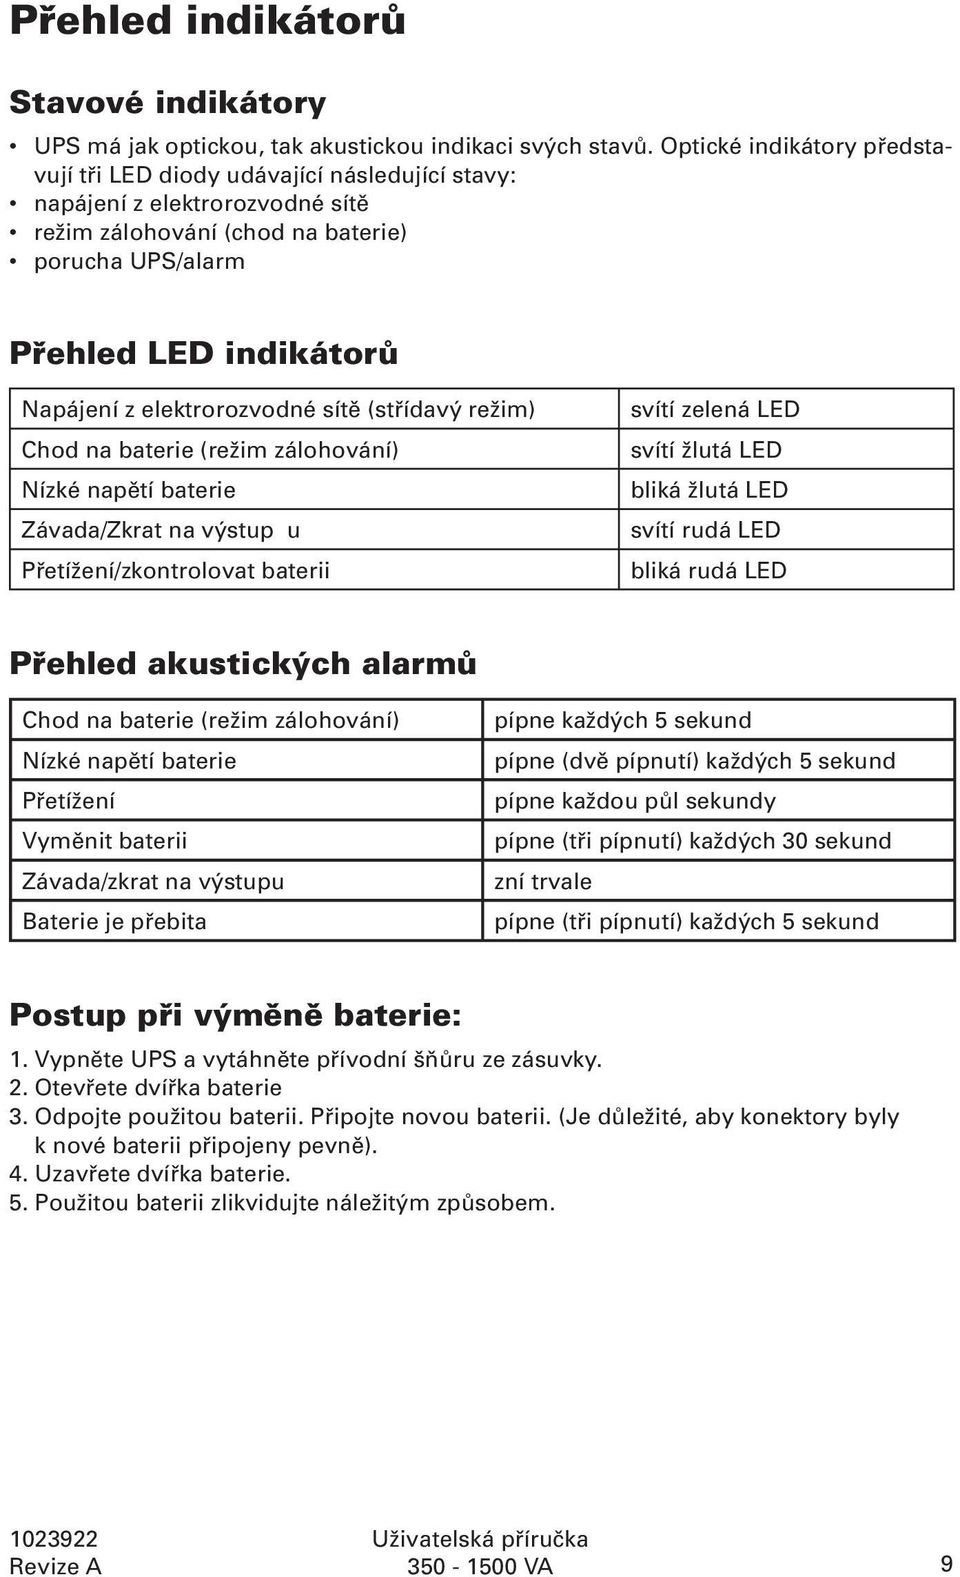 elektrorozvodné sítě (střídavý režim) Chod na baterie (režim zálohování) Nízké napětí baterie Závada/Zkrat na výstup u Přetížení/zkontrolovat baterii svítí zelená LED svítí žlutá LED bliká žlutá LED